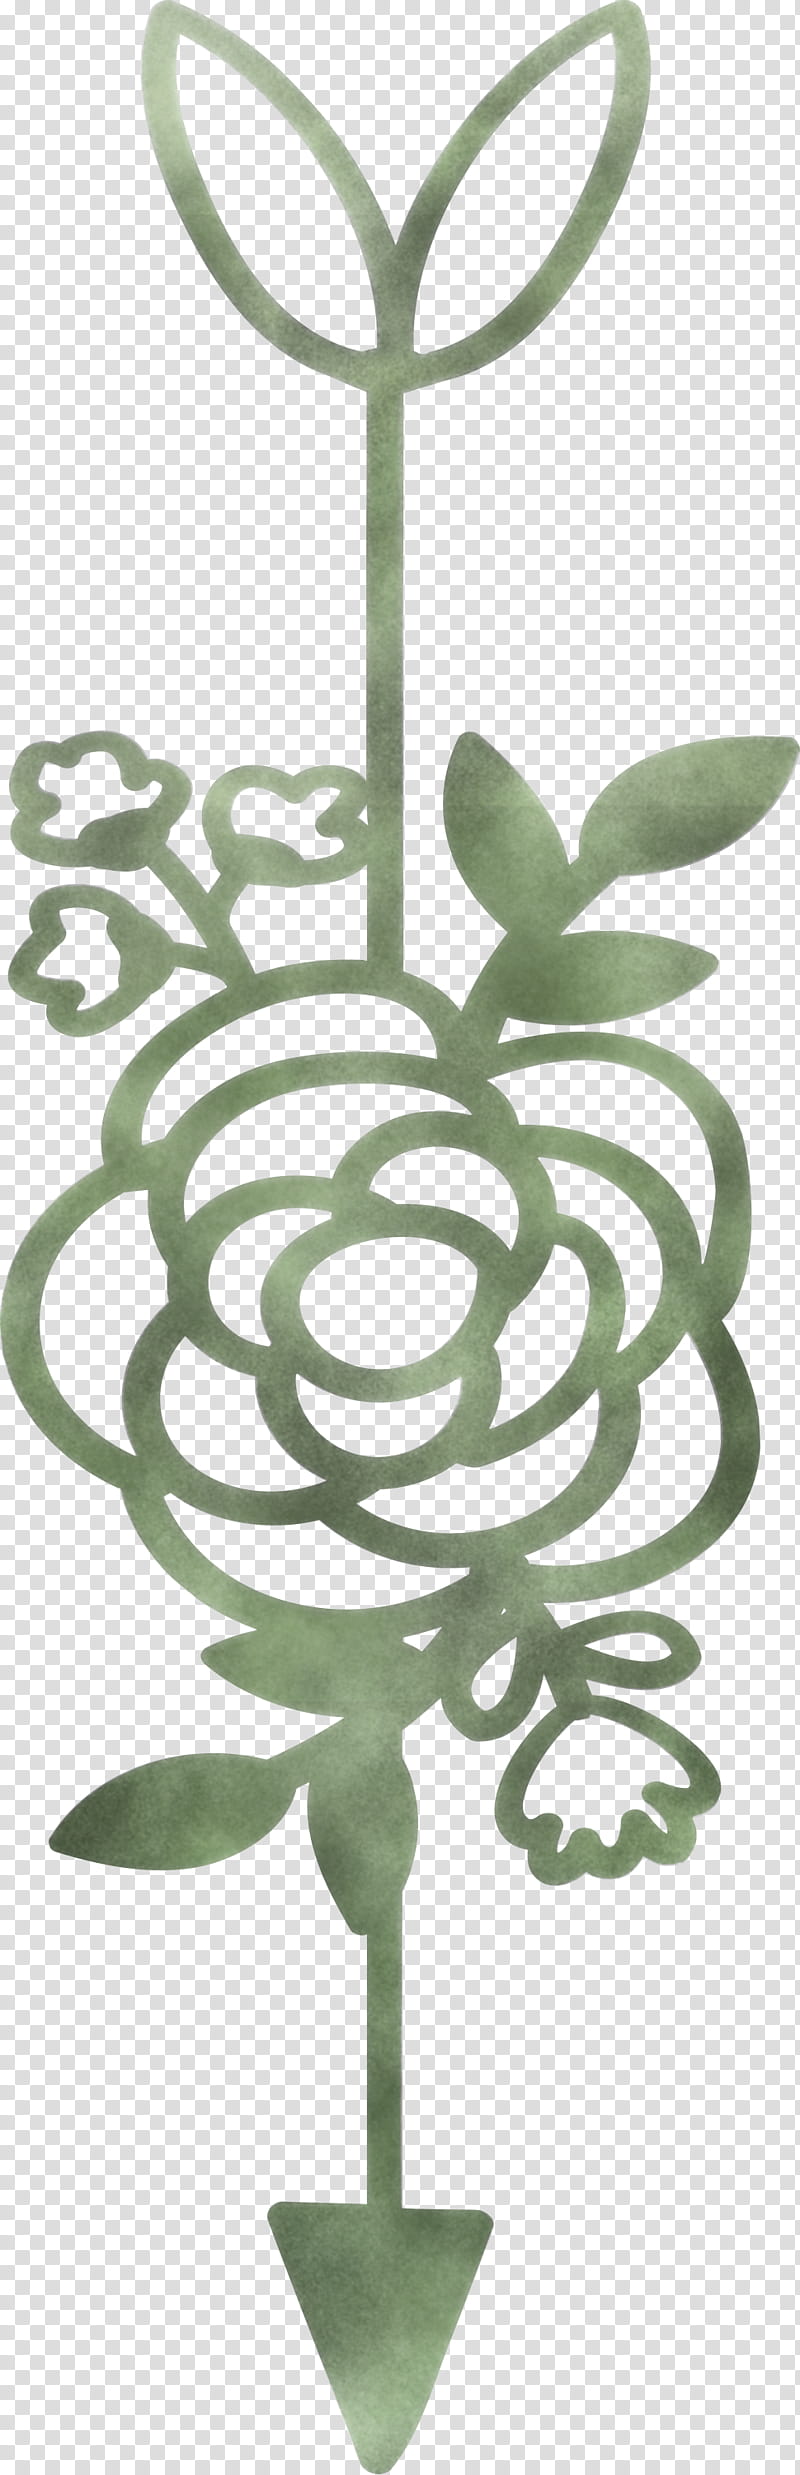 boho arrow flower arrow, Leaf, Plant, Plant Stem transparent background PNG clipart